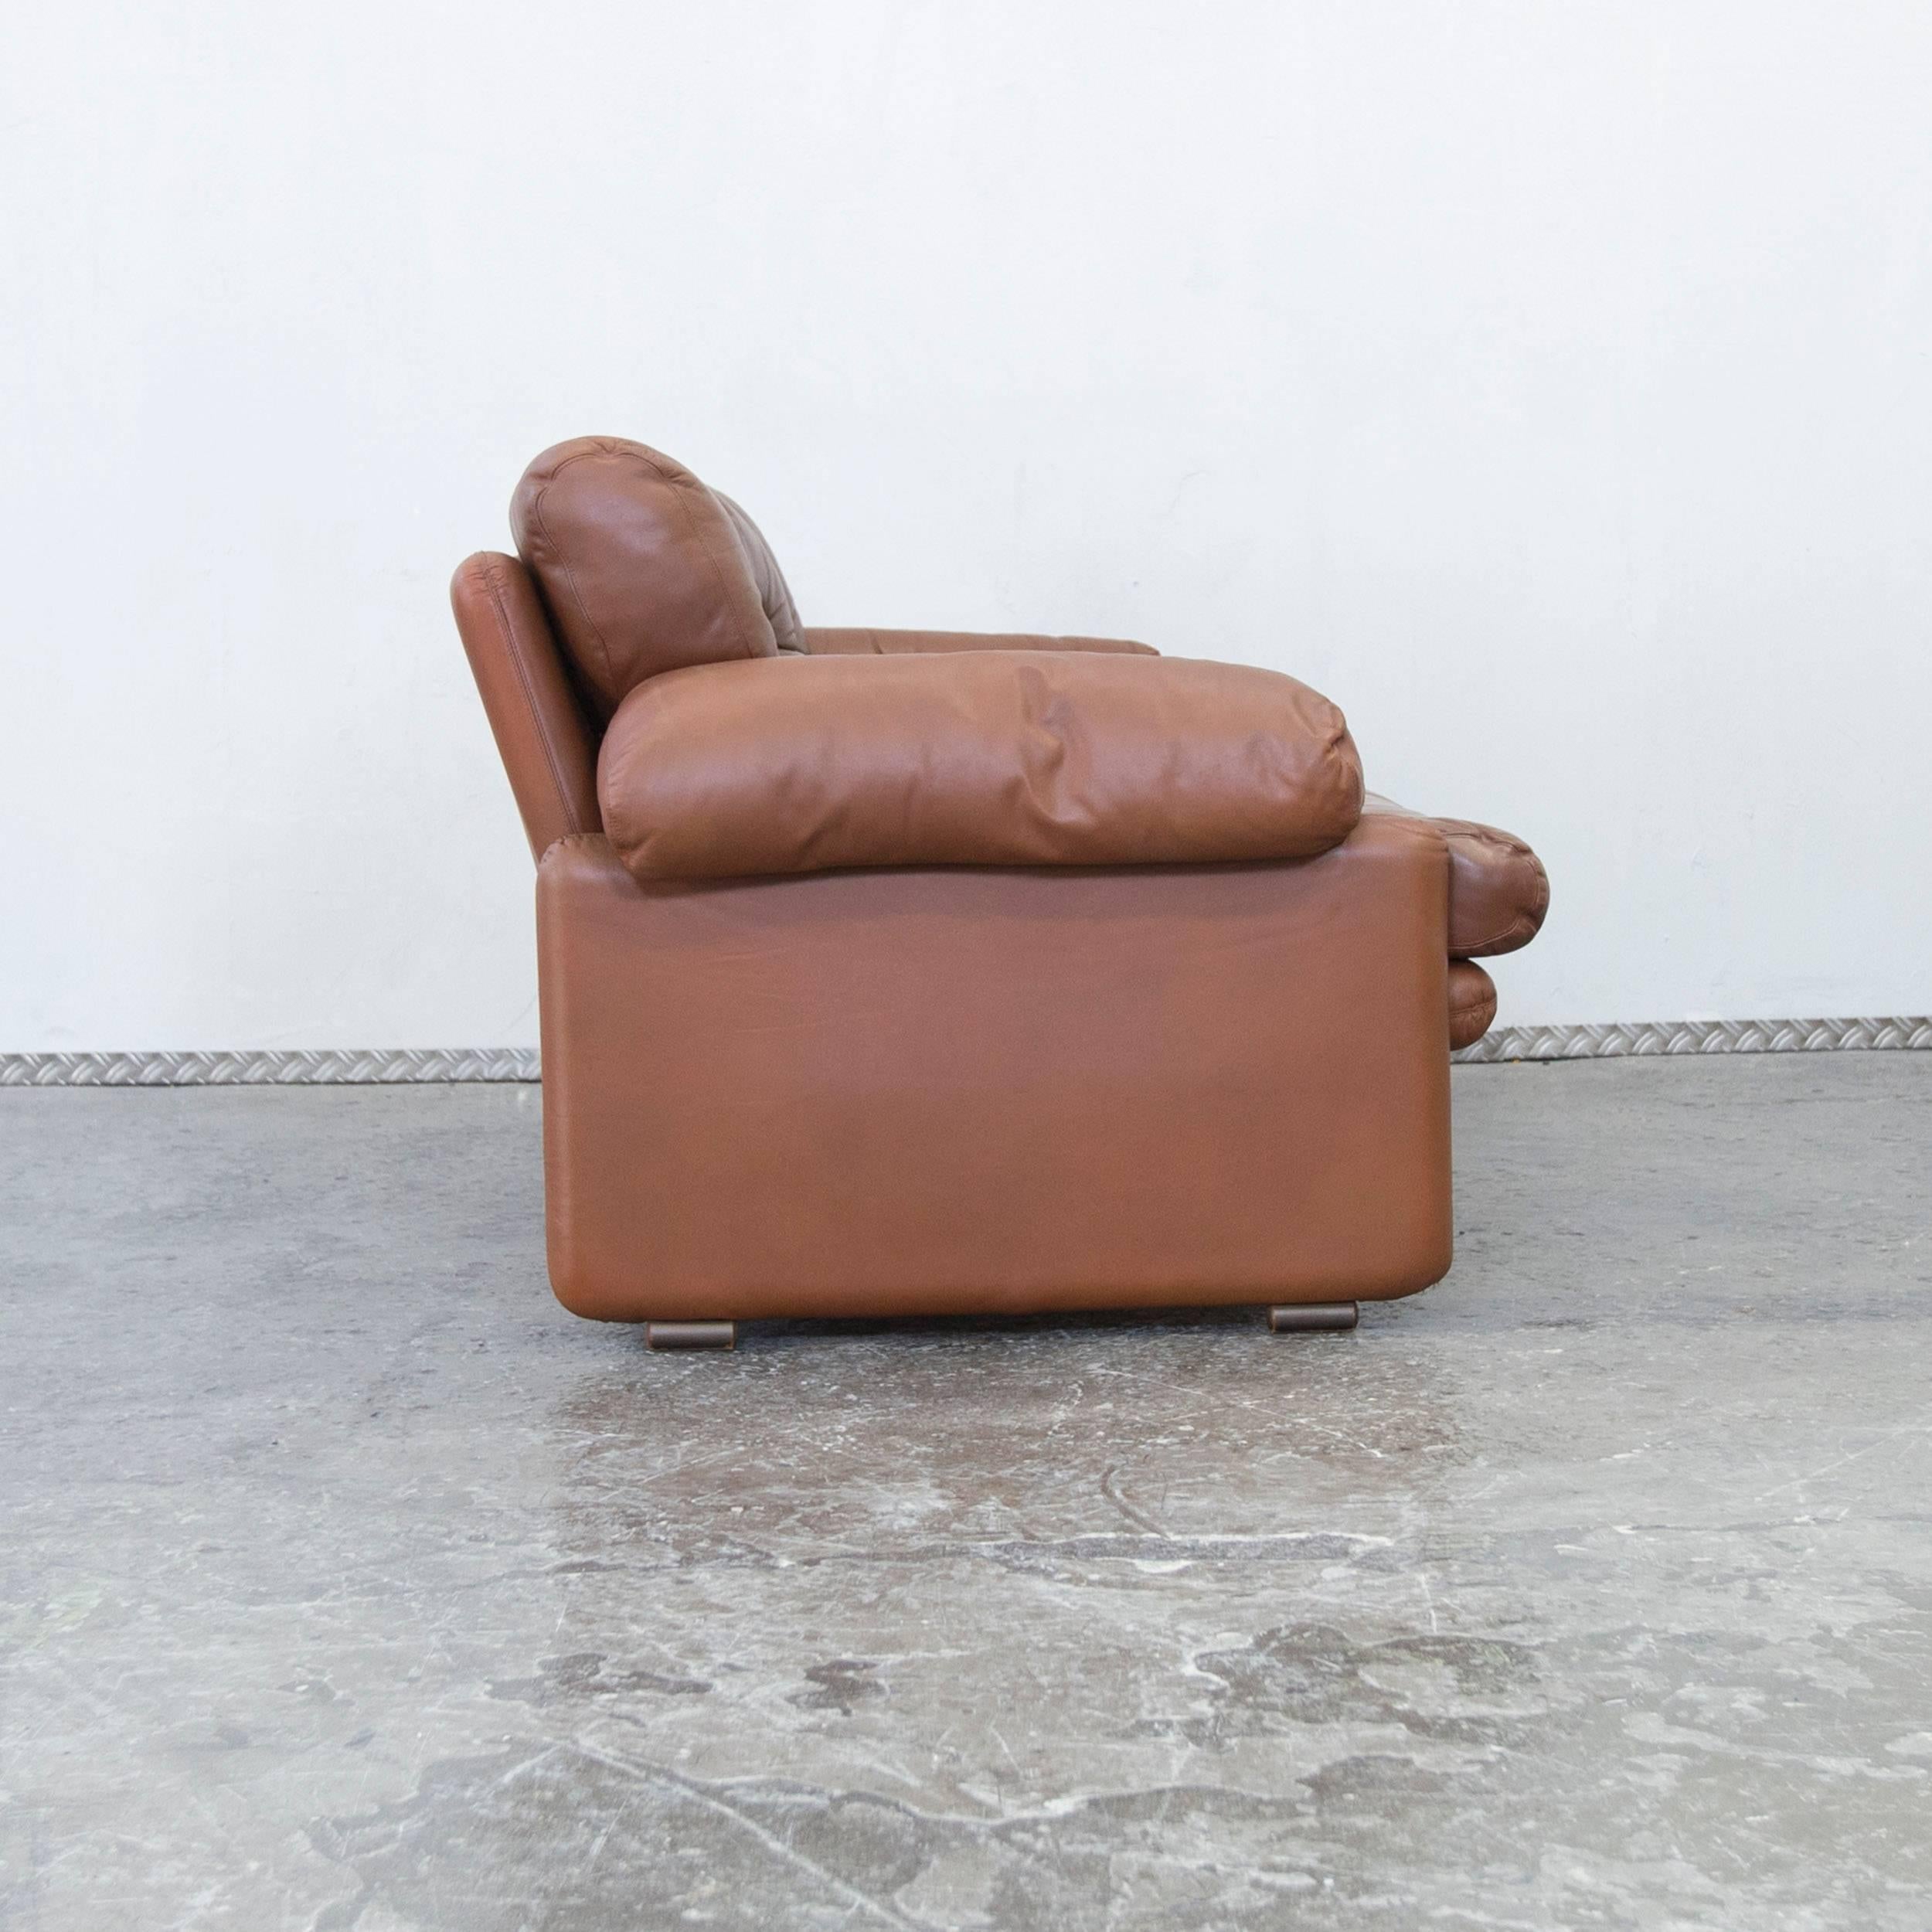 C&B Italia Coronado Fine Leather Two-Seat Sofa by Tobia Scarpa Couch Brown 2